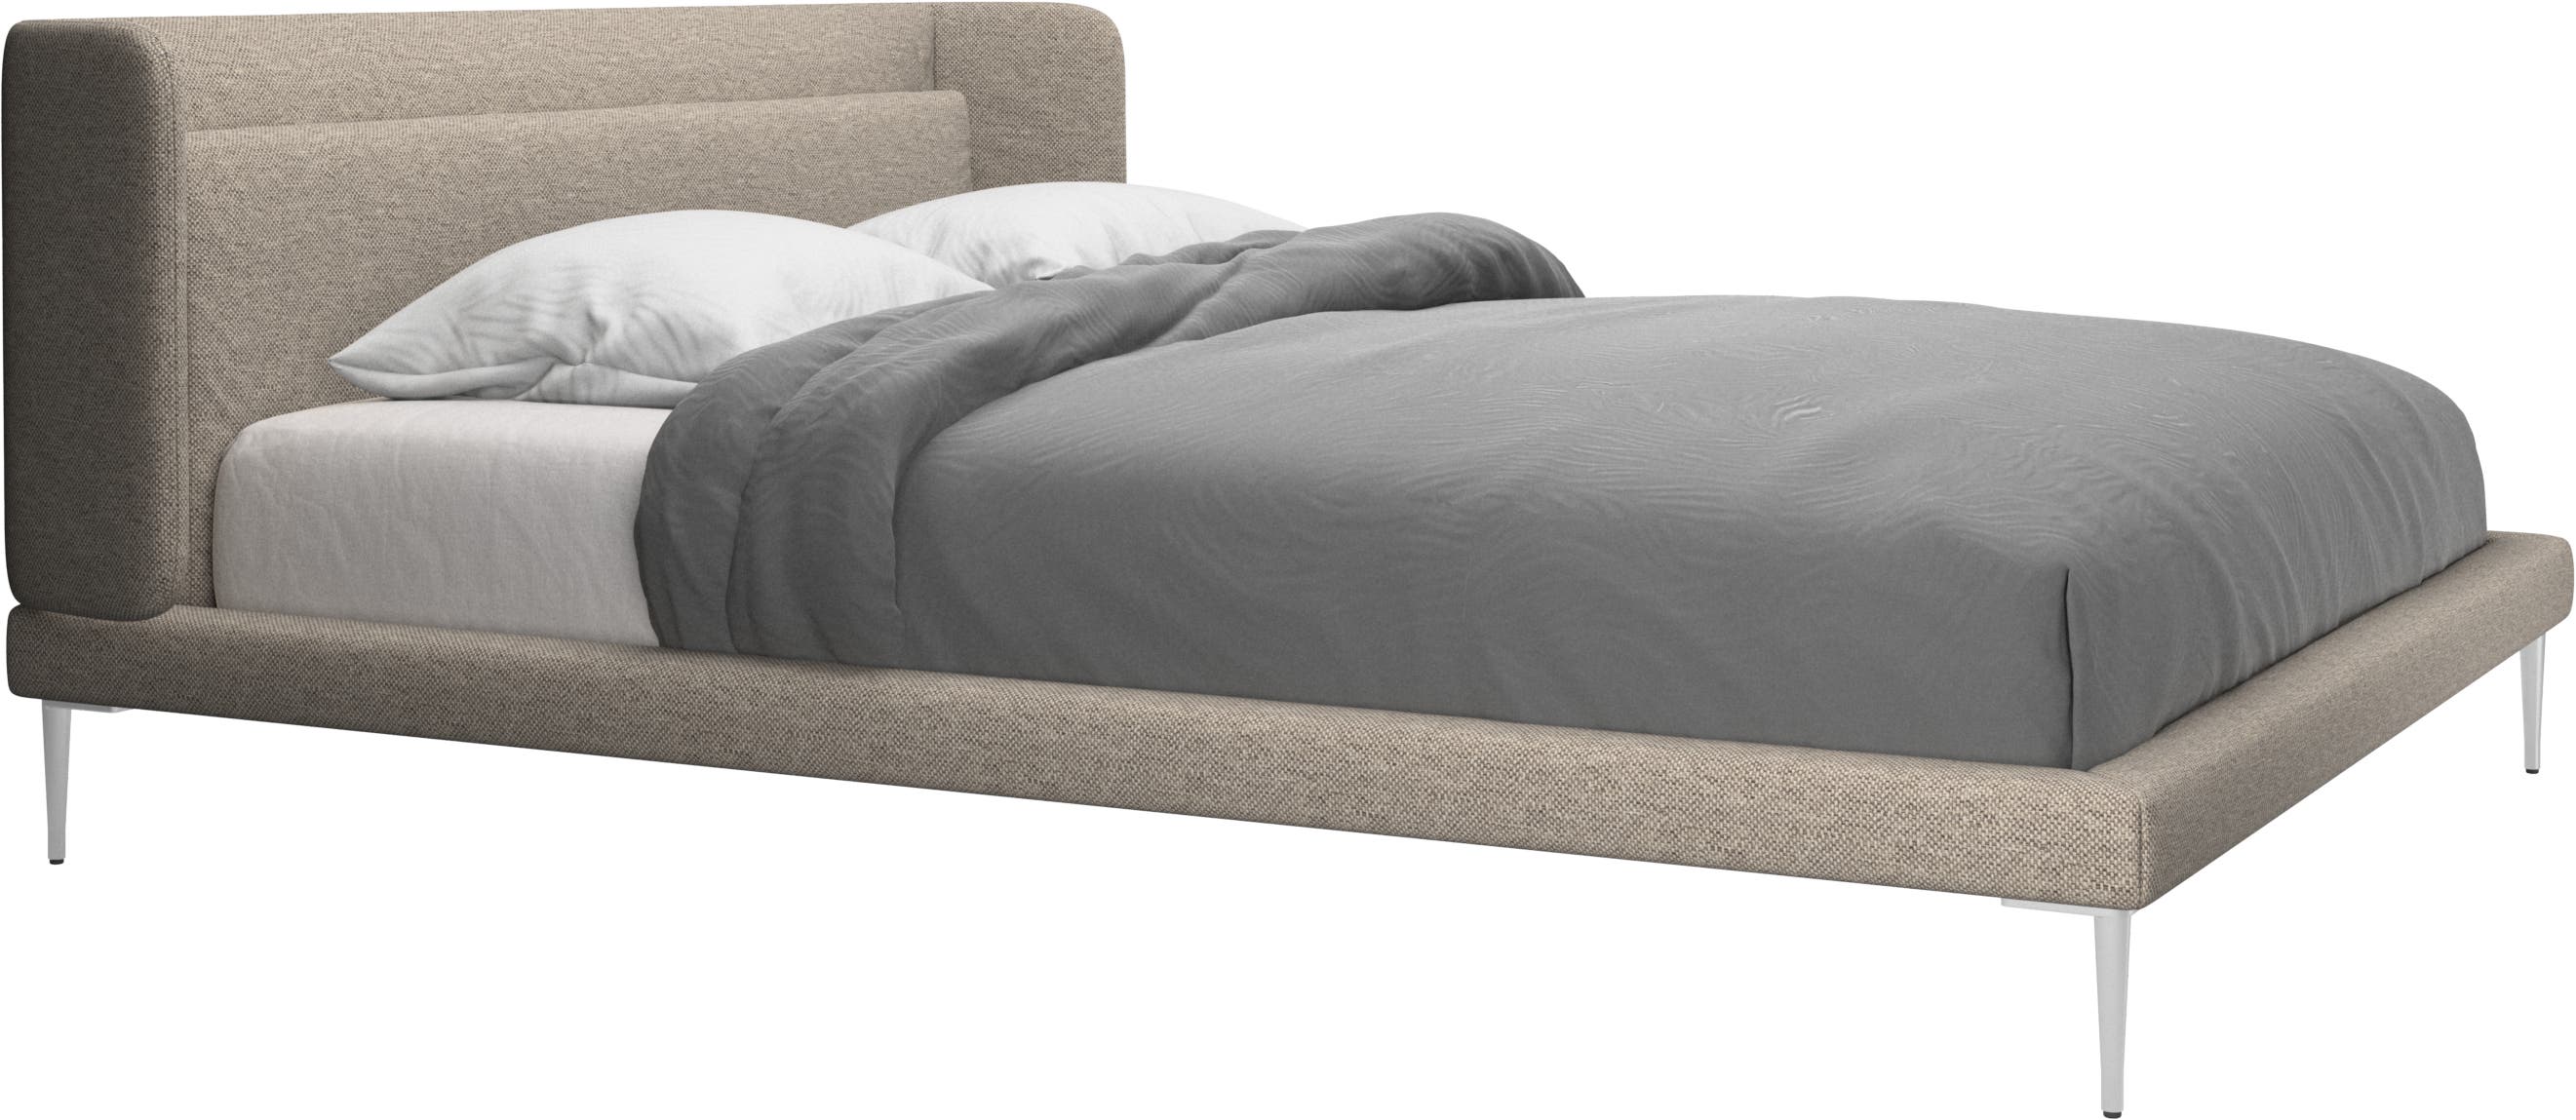 Austin ágy, matrac nélkül